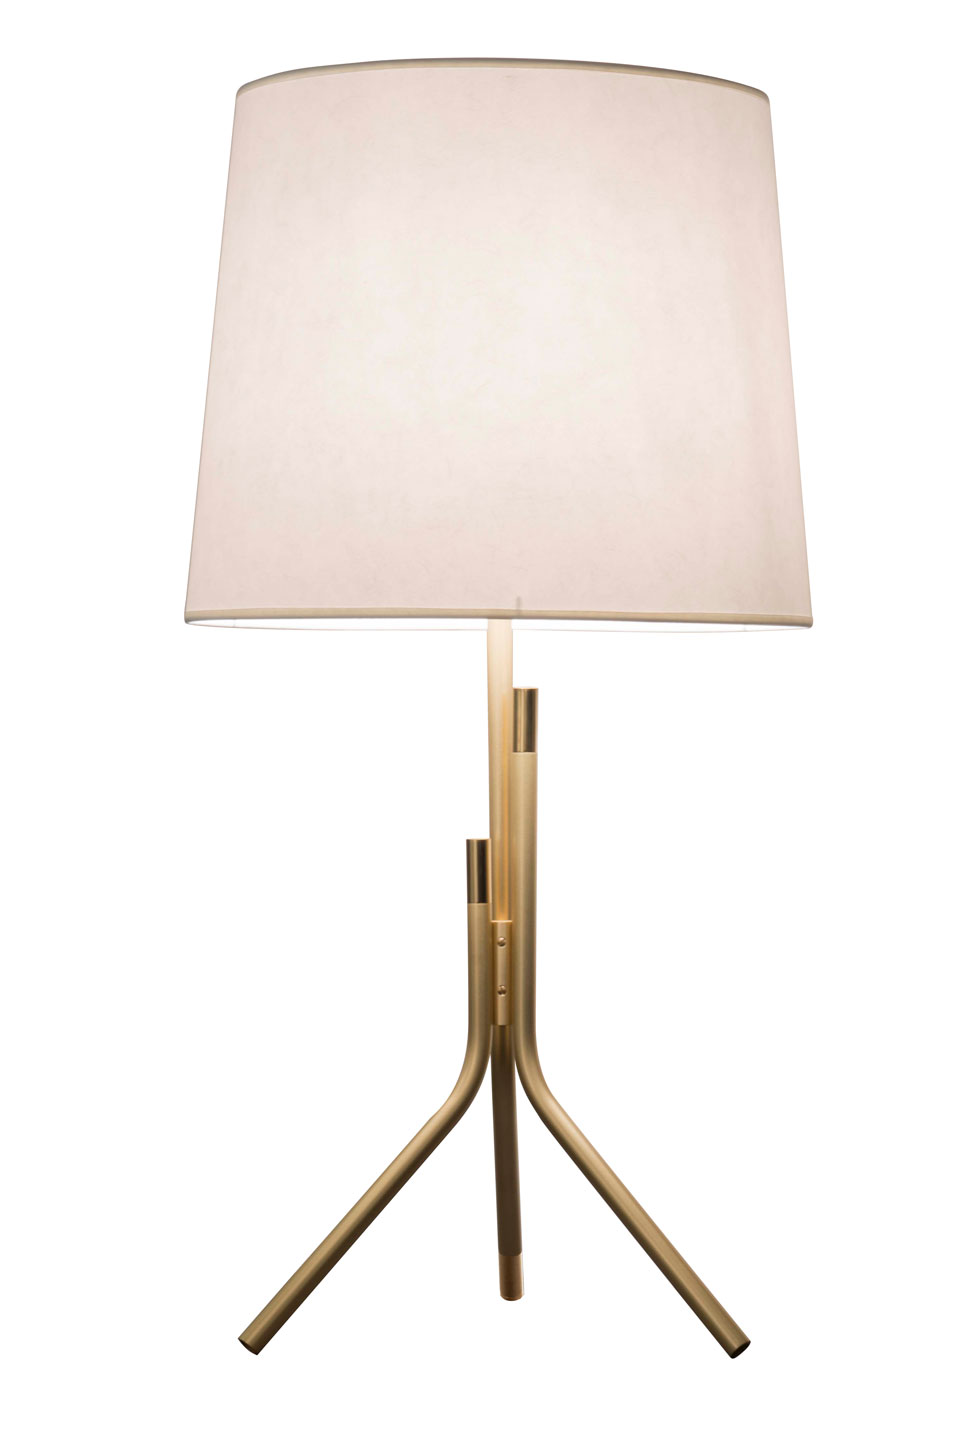 Ellis lampe de table design, dorée mat et brillant grand abat-jour blanc. CVL Luminaires. 